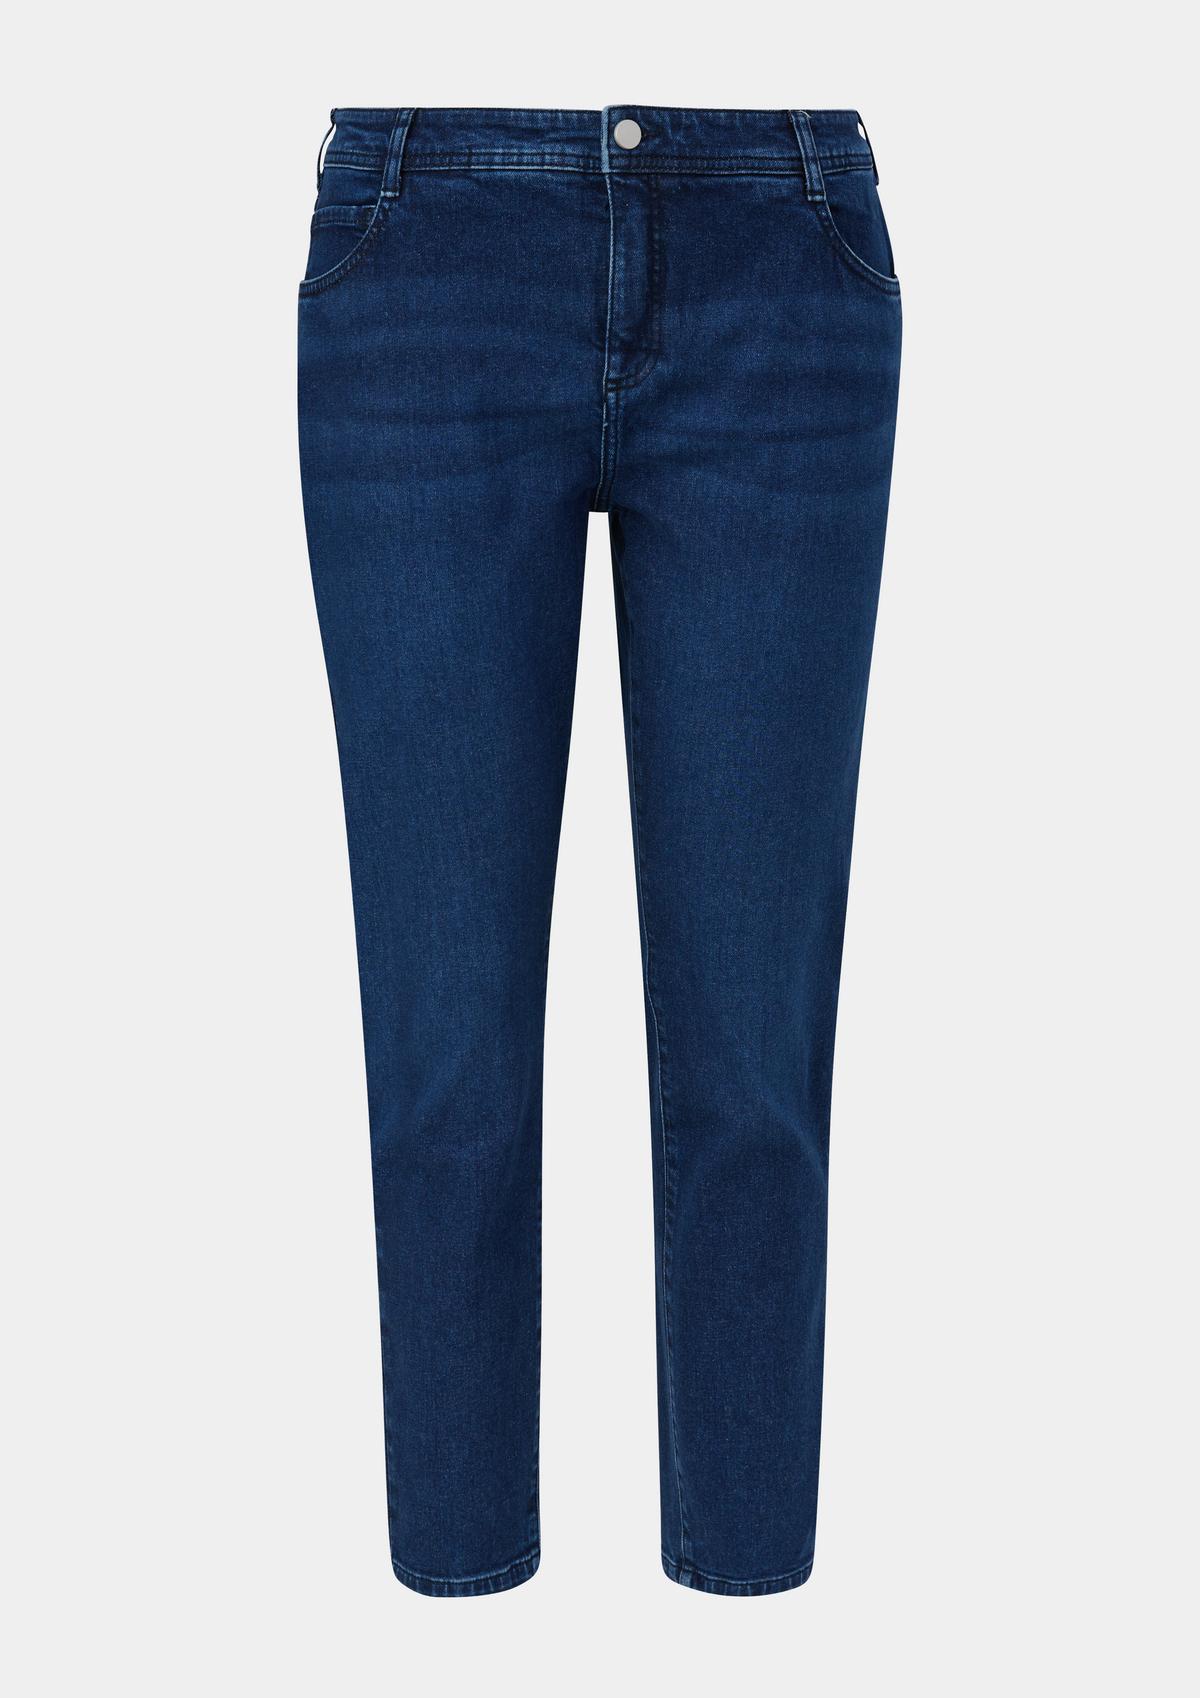 Jeans / skinny fit / mid leg / - five-pocket Oliver rise blue | design / skinny s